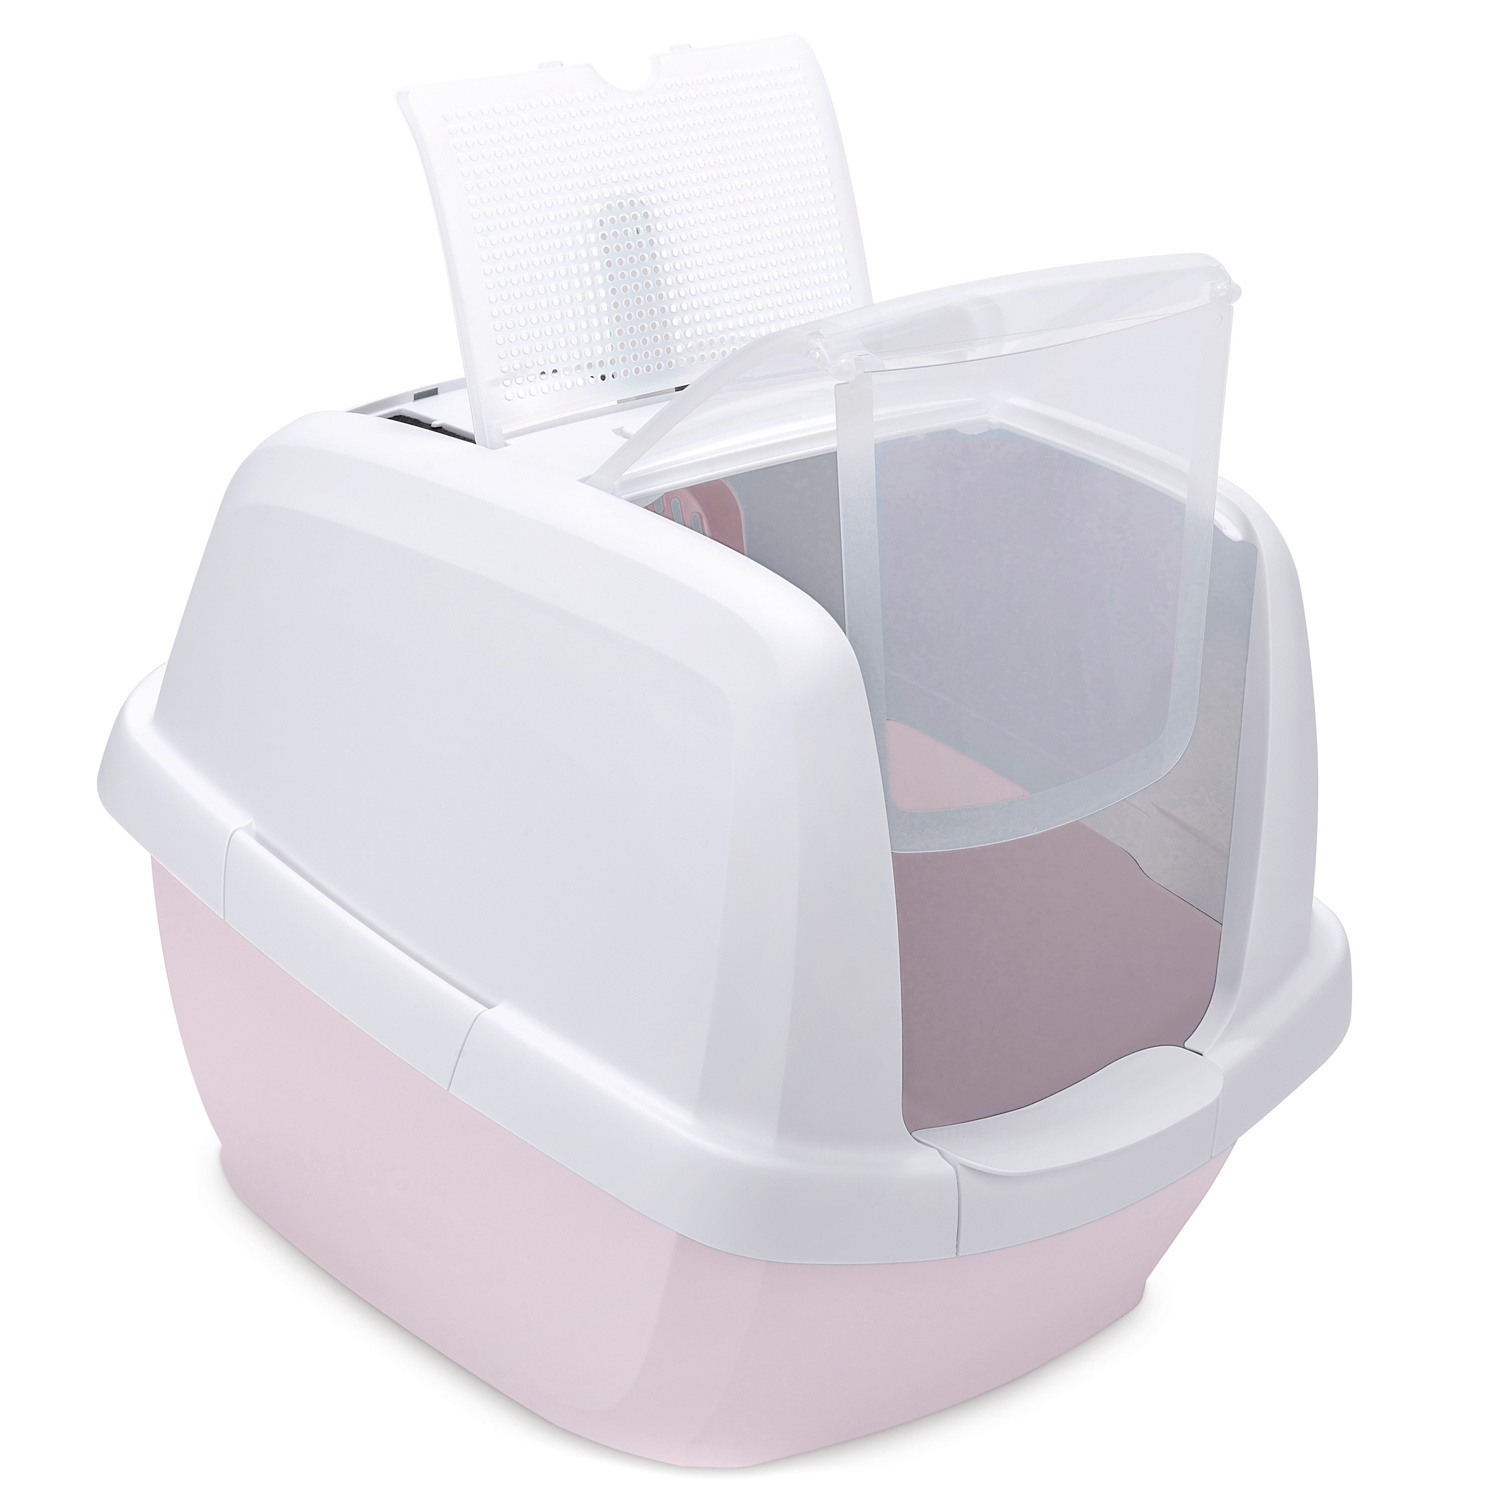 IMAC IMAC био-туалет для кошек , белый/нежно-розовый (2,85 кг) imac imac совочек для туалета 23 см нежно розовый неж гол